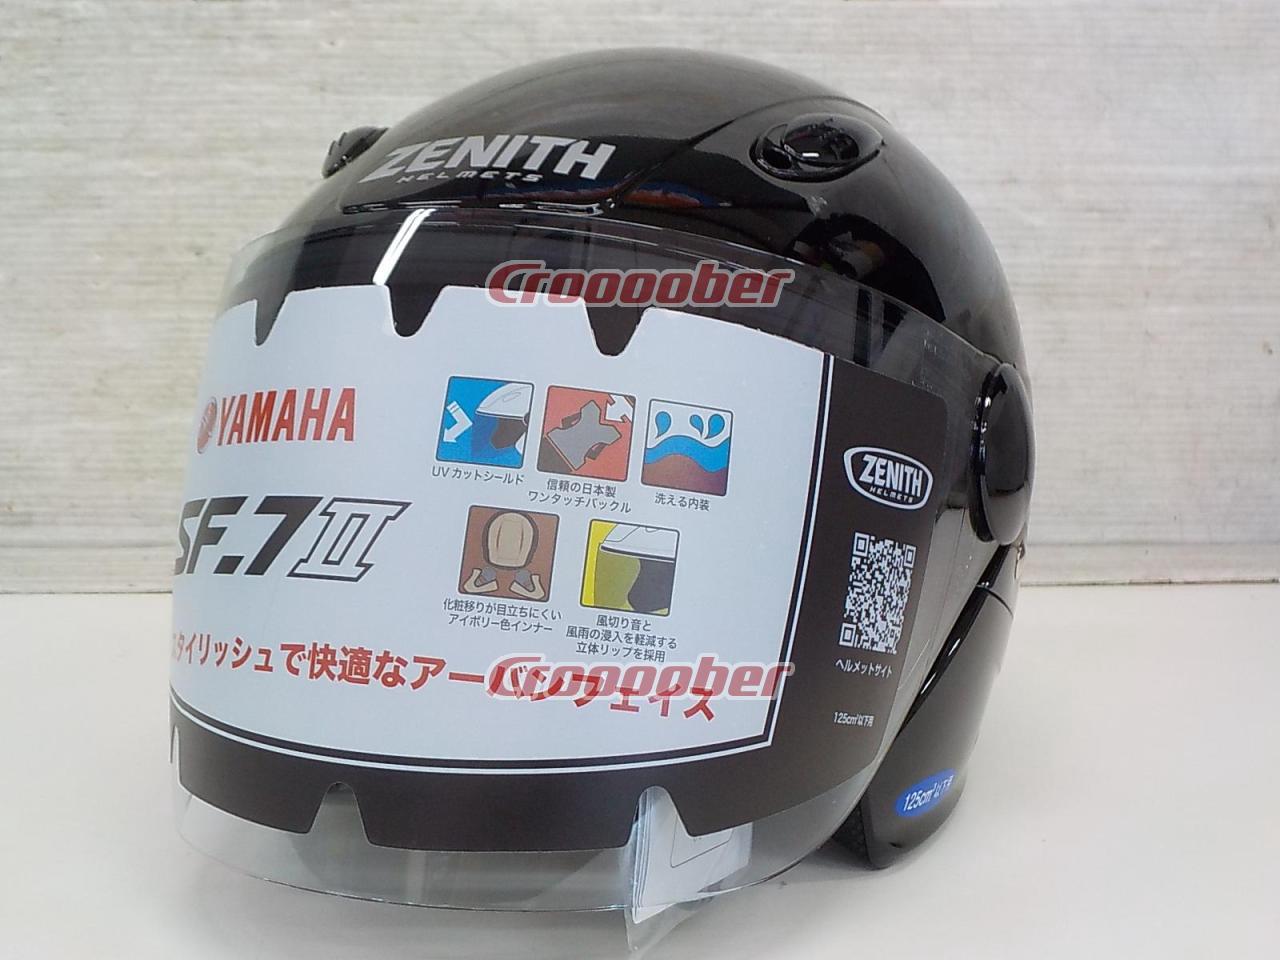 YAMAHA(ヤマハ) ZENITH SF-7Ⅱ ジェットヘルメット サイズ:XL(60-61cm